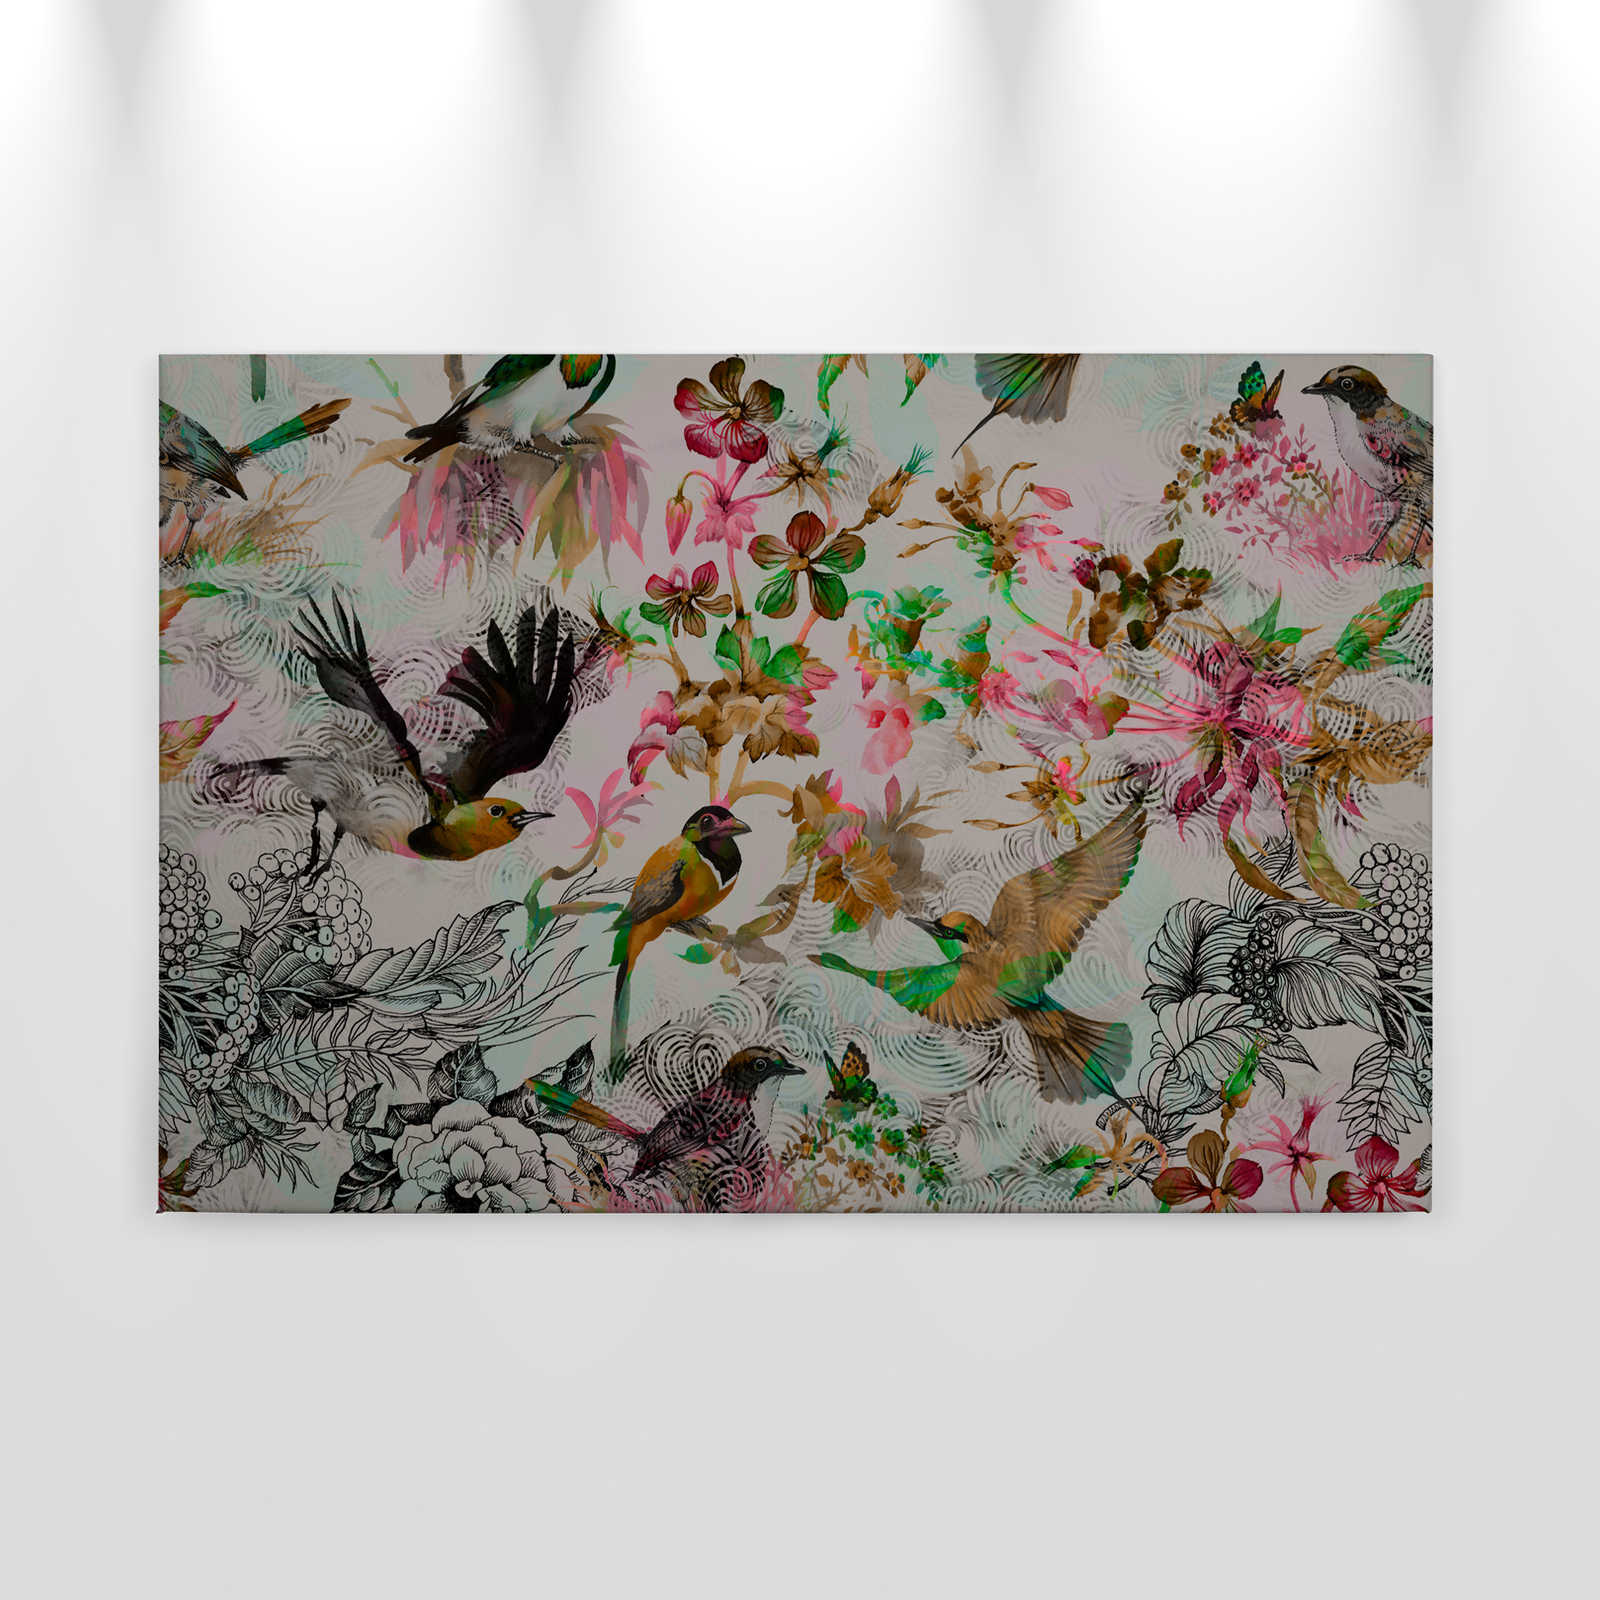             Canvas schilderij Vogels & Bloemrijk Collage Stijl - 0,90 m x 0,60 m
        